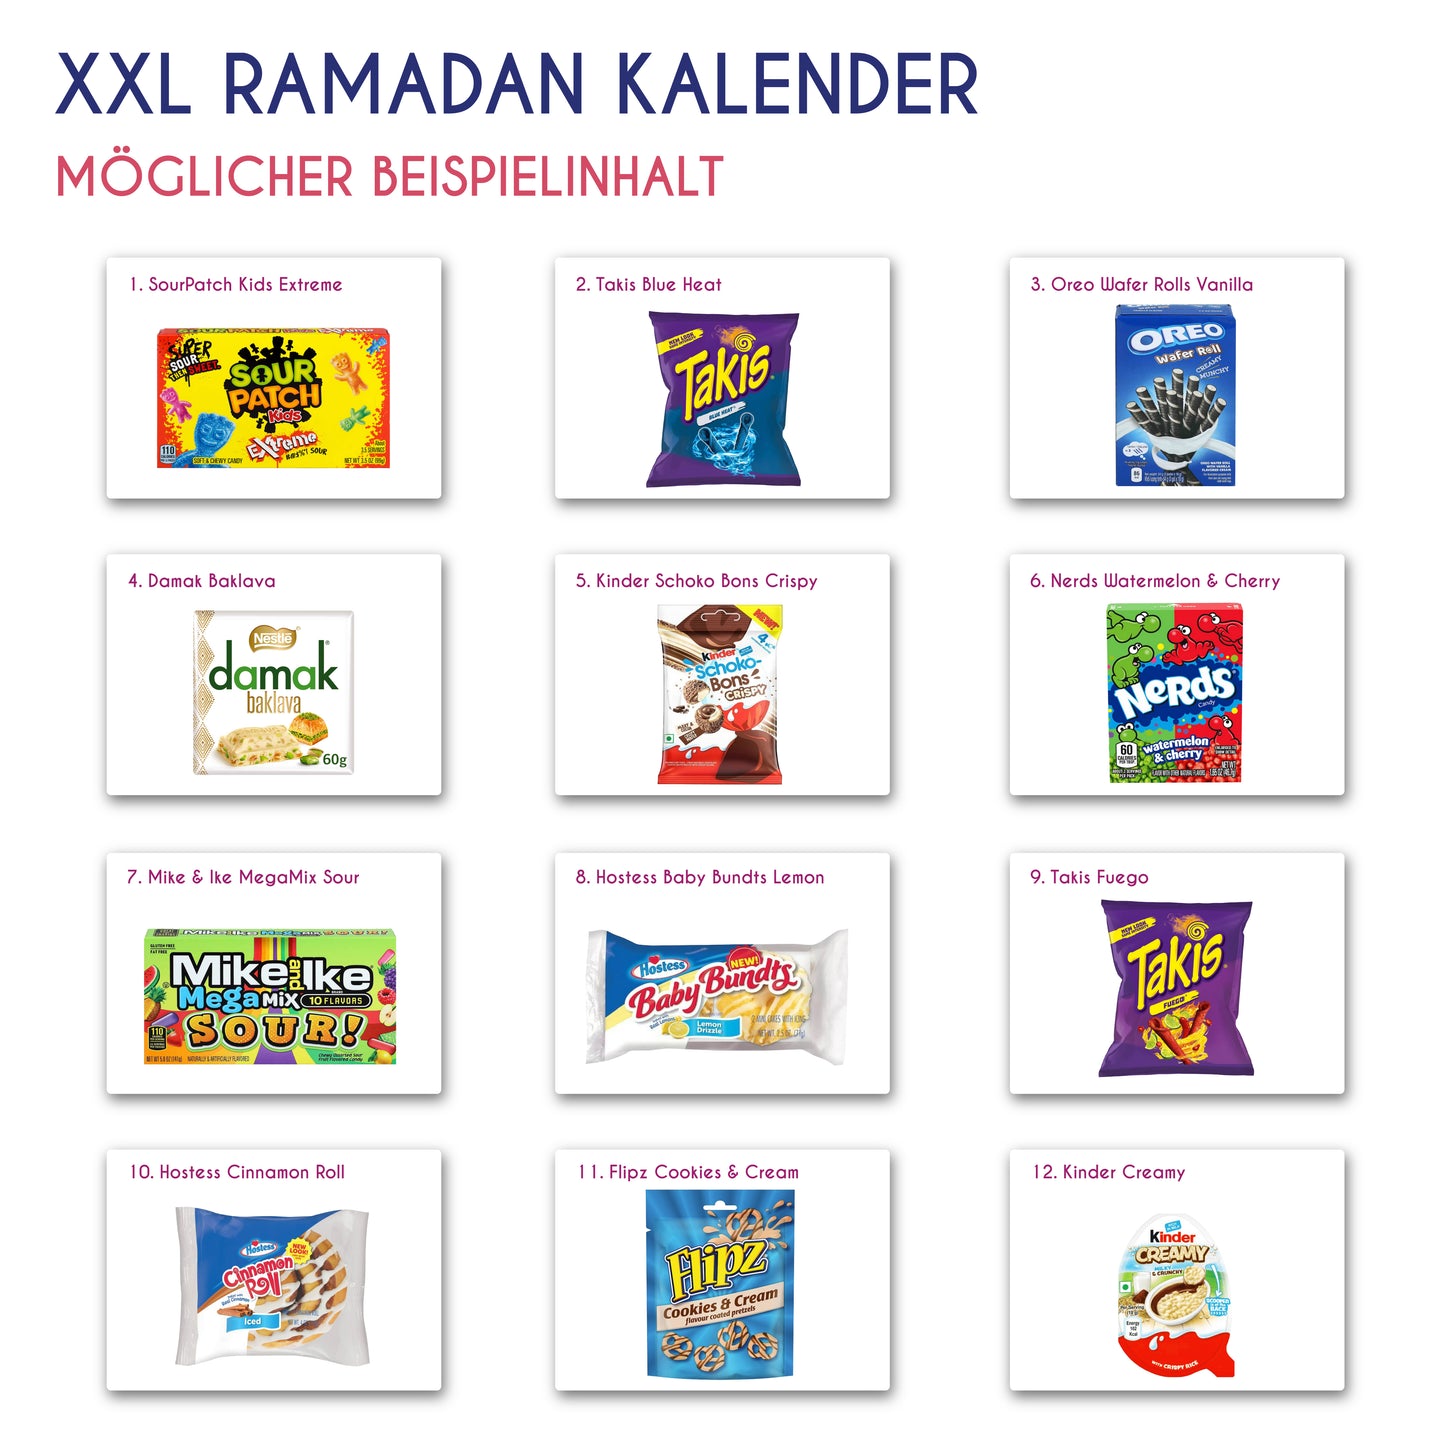 Sugargangs XXL Ramadan Kalender